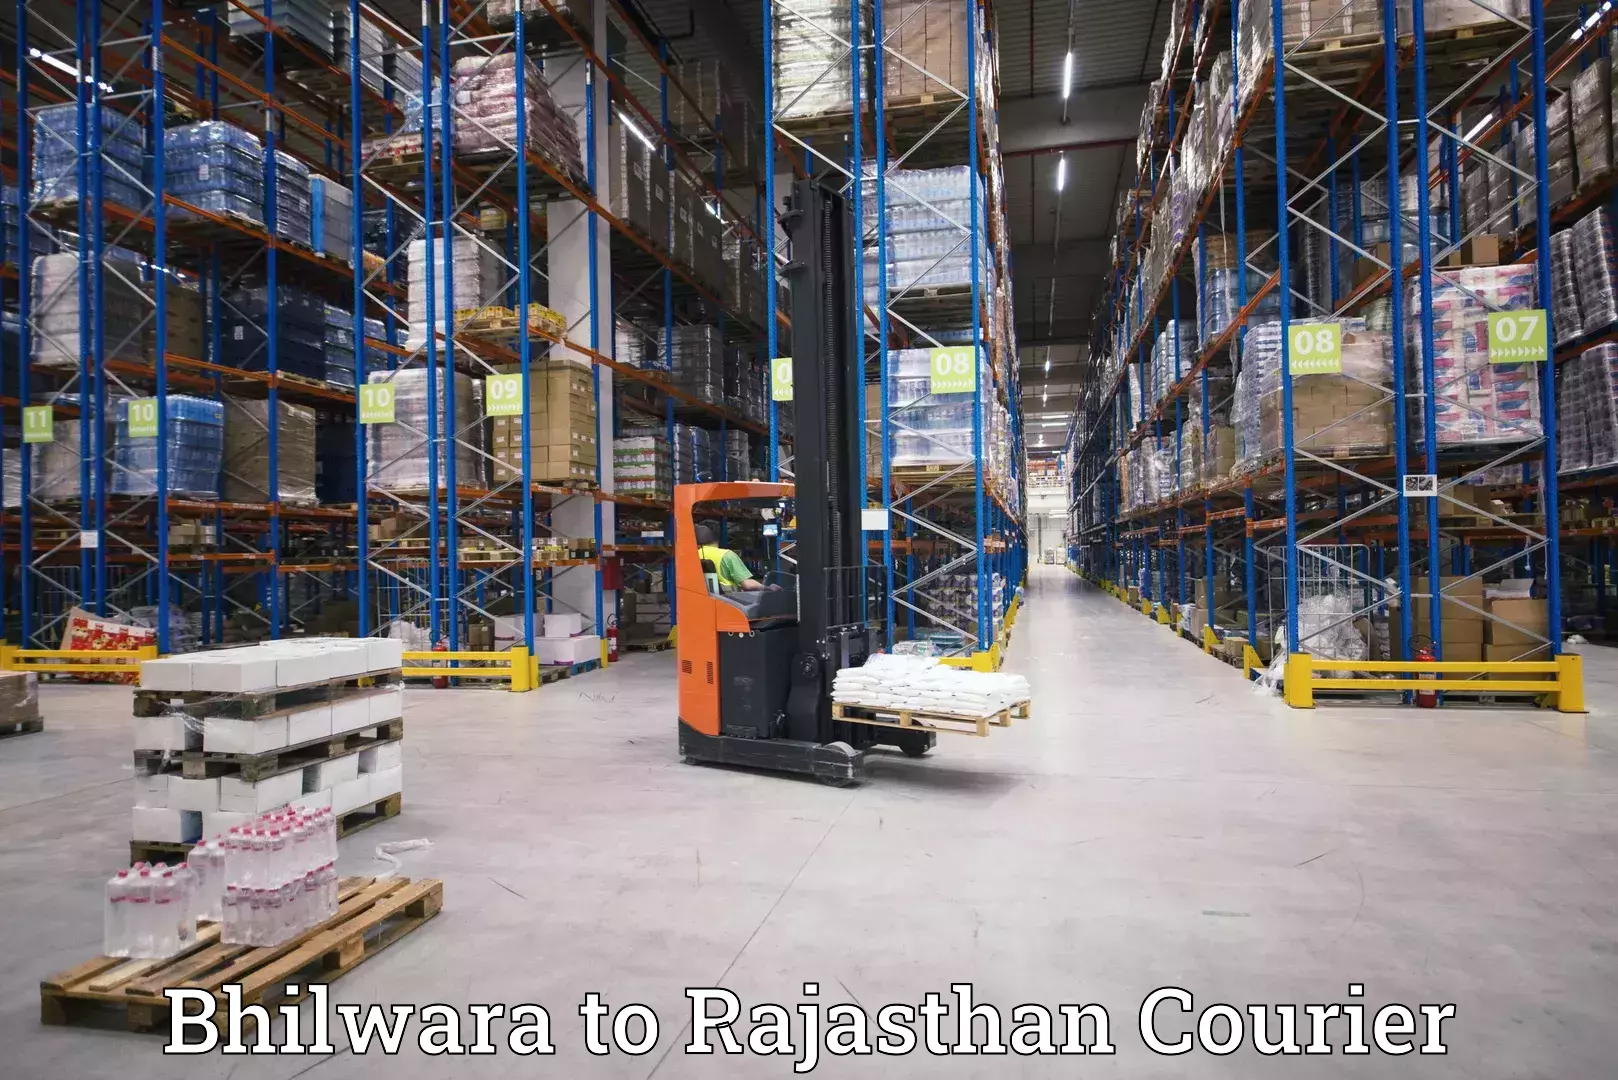 High-capacity parcel service Bhilwara to Sambhar